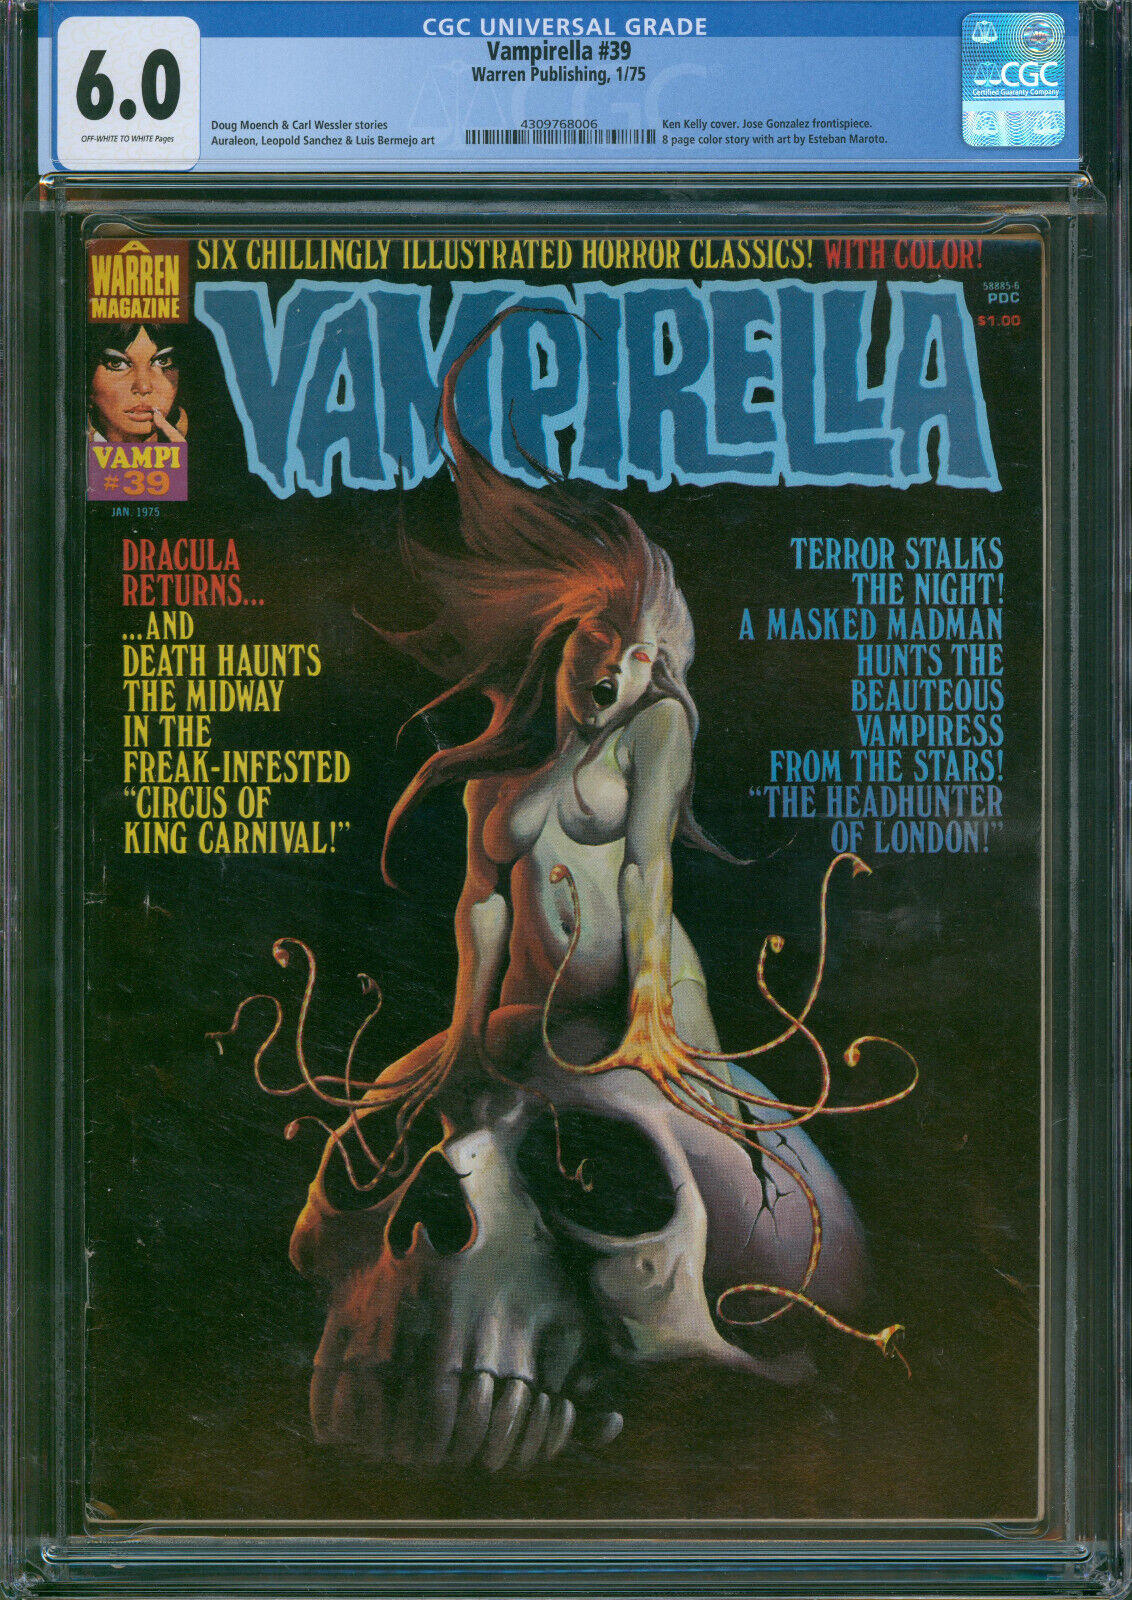 Vampirella #39 Ken Kelly Cover Warren Publishing 1975 CGC 6.0